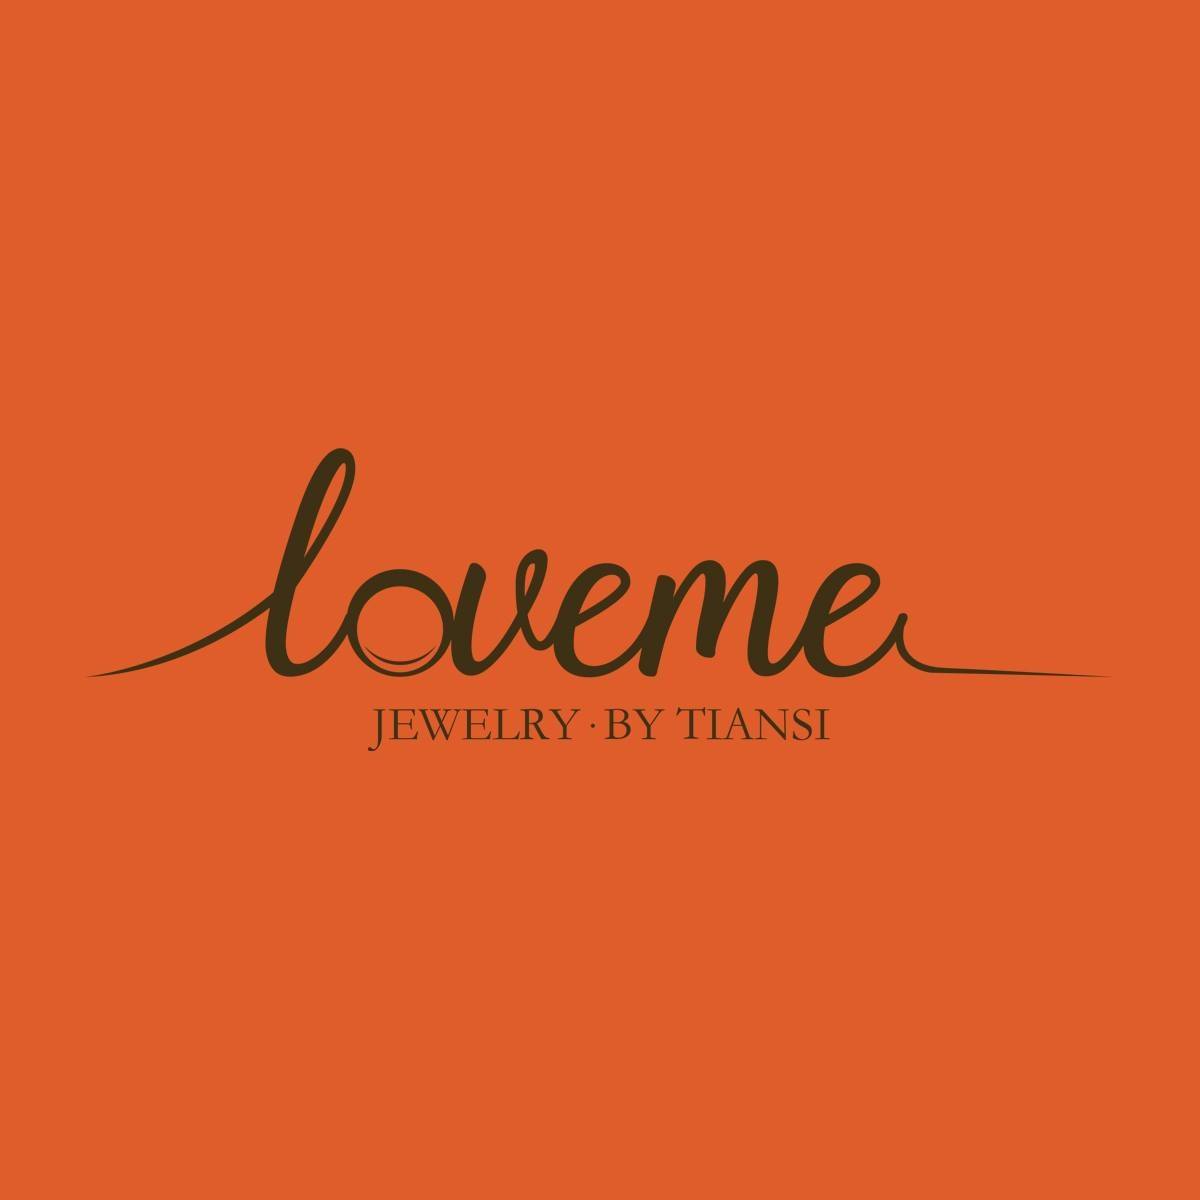 Love Me Jewelry 60 Puu KOA Pl, Haiku Hawaii 96708